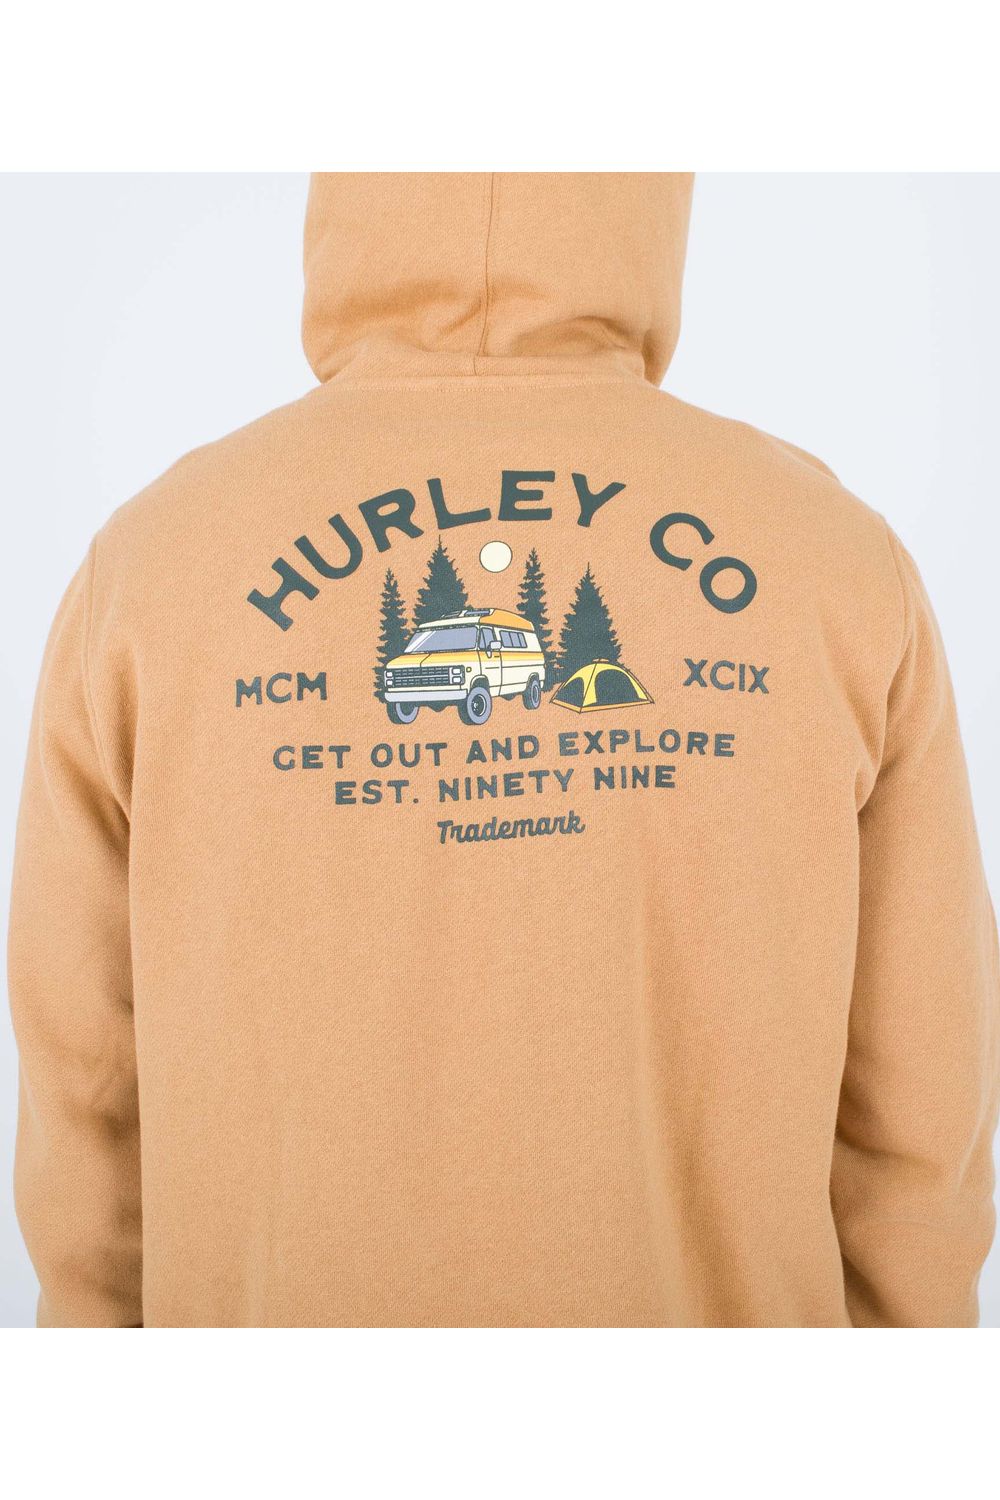 Hurley Campin Fleece PO Hoody Earthstone